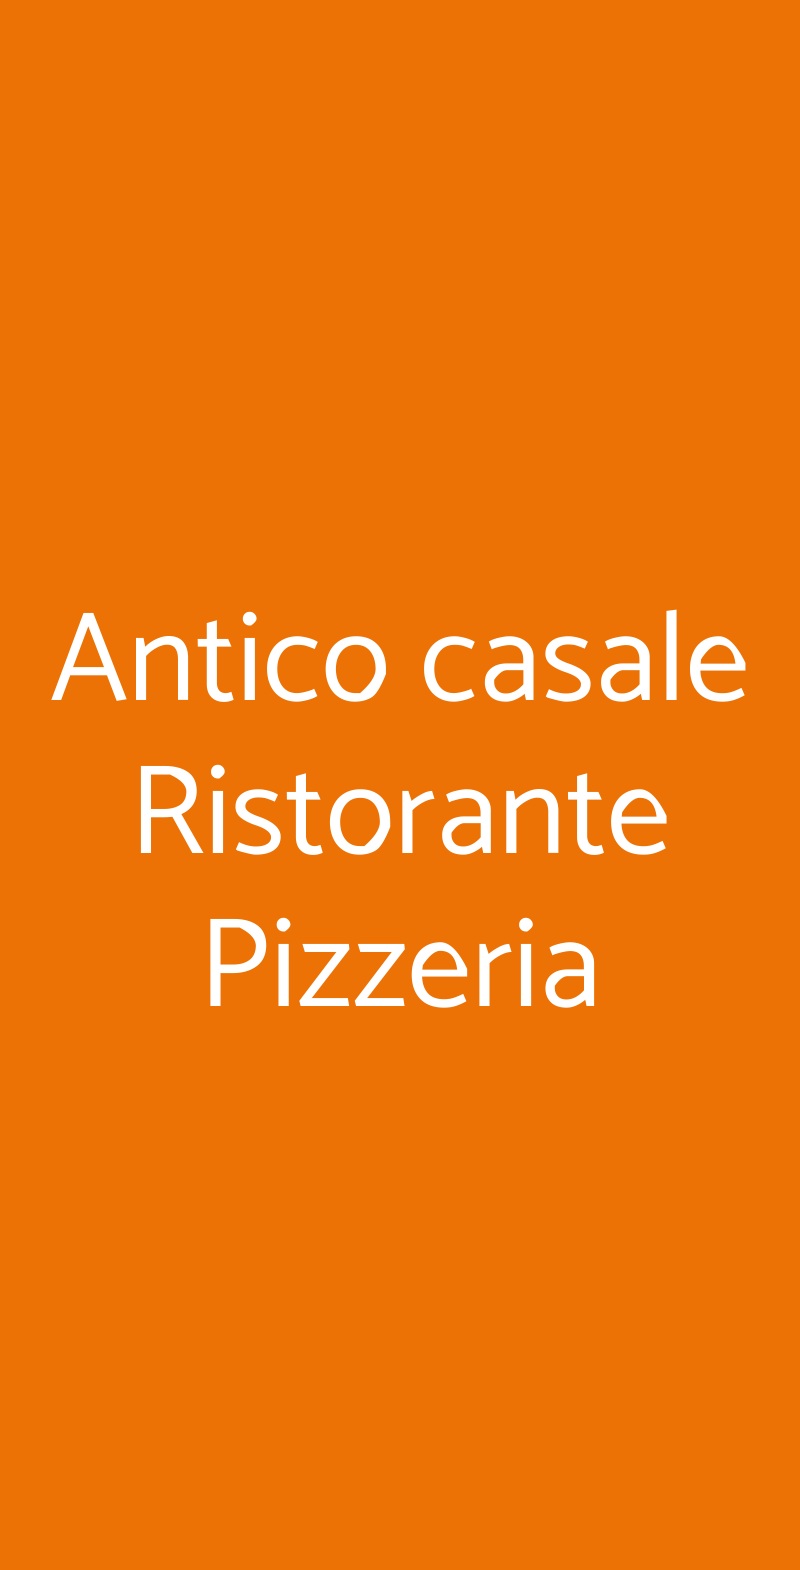 Antico casale Ristorante Pizzeria Torino menù 1 pagina